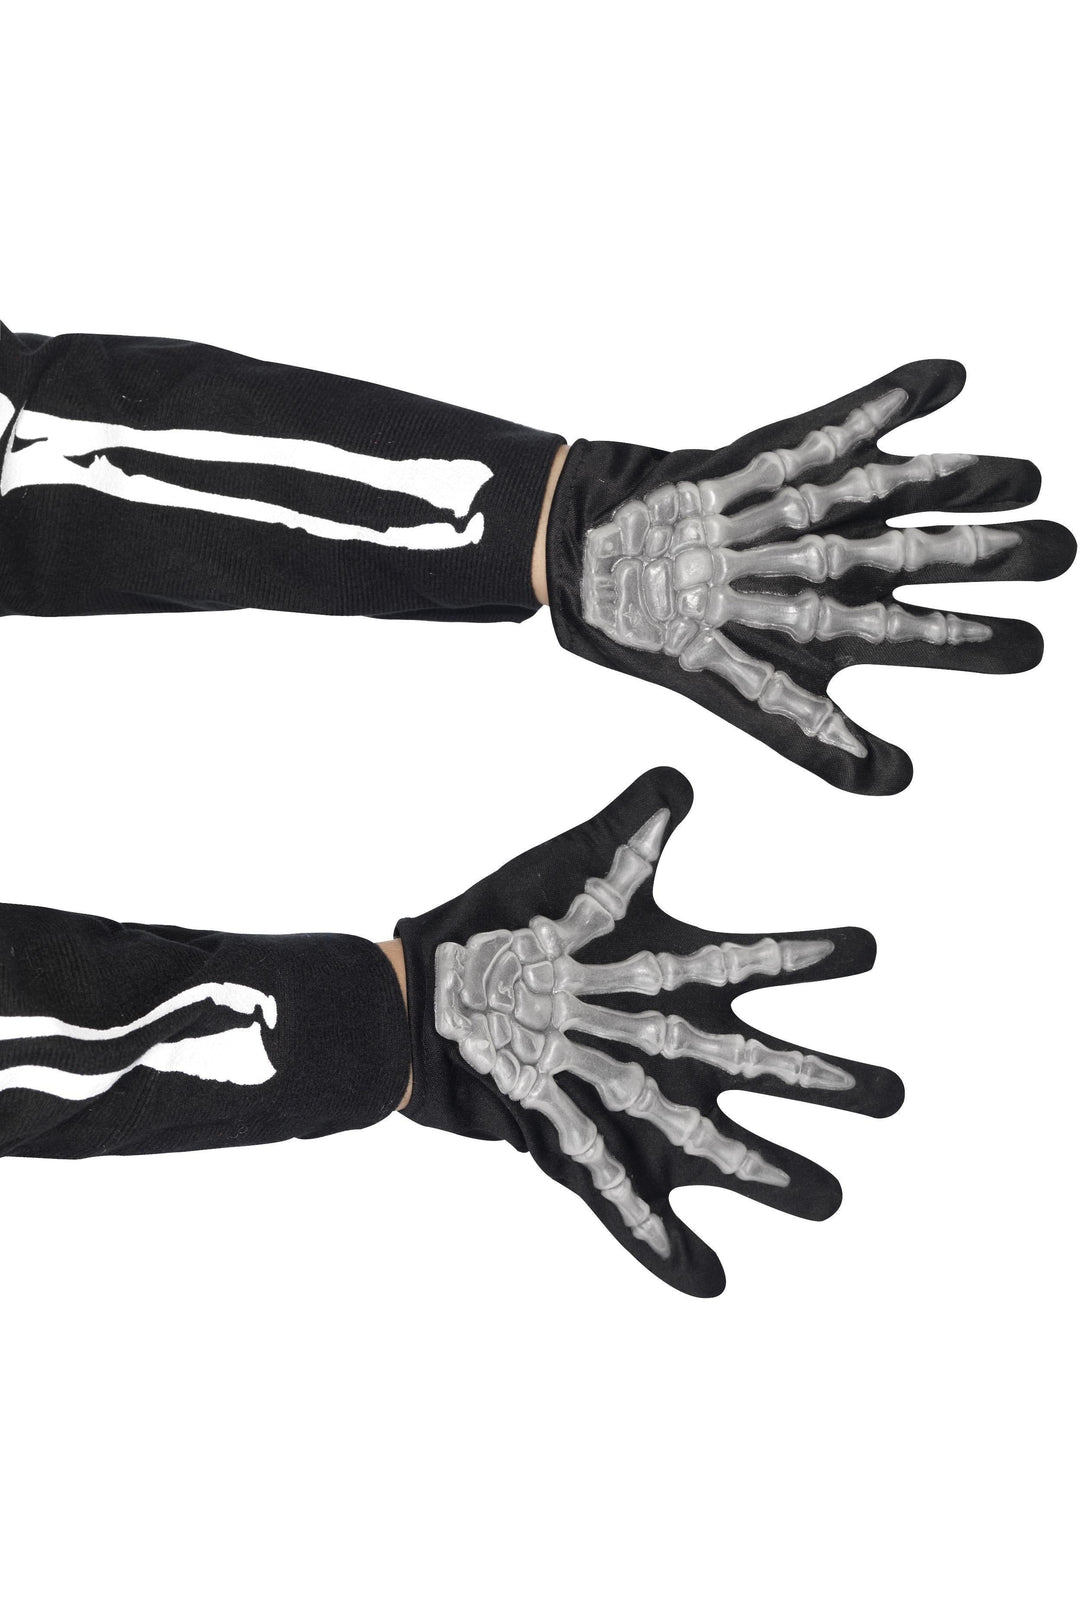 Skeleton Gloves Child